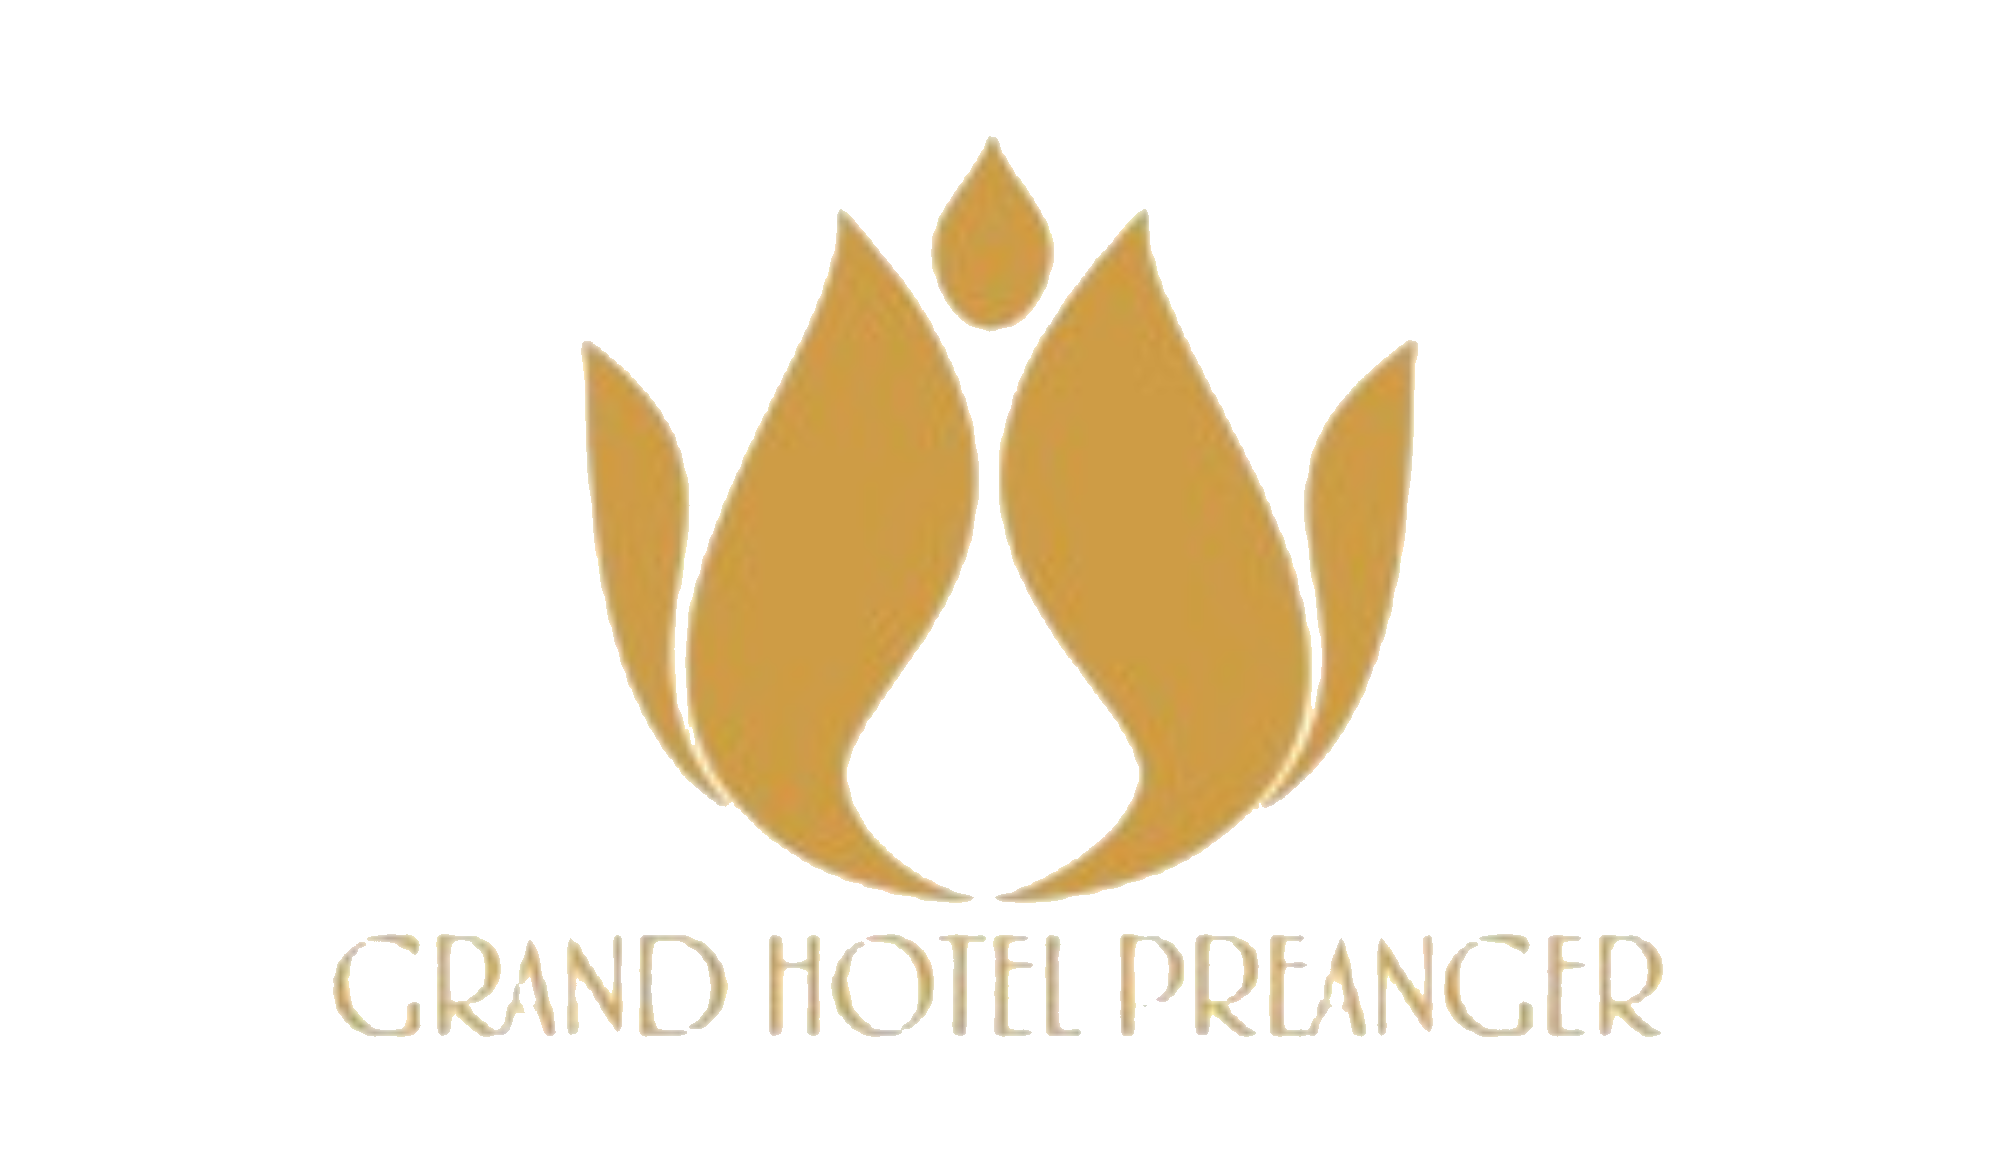 Grand Hotel Preanger